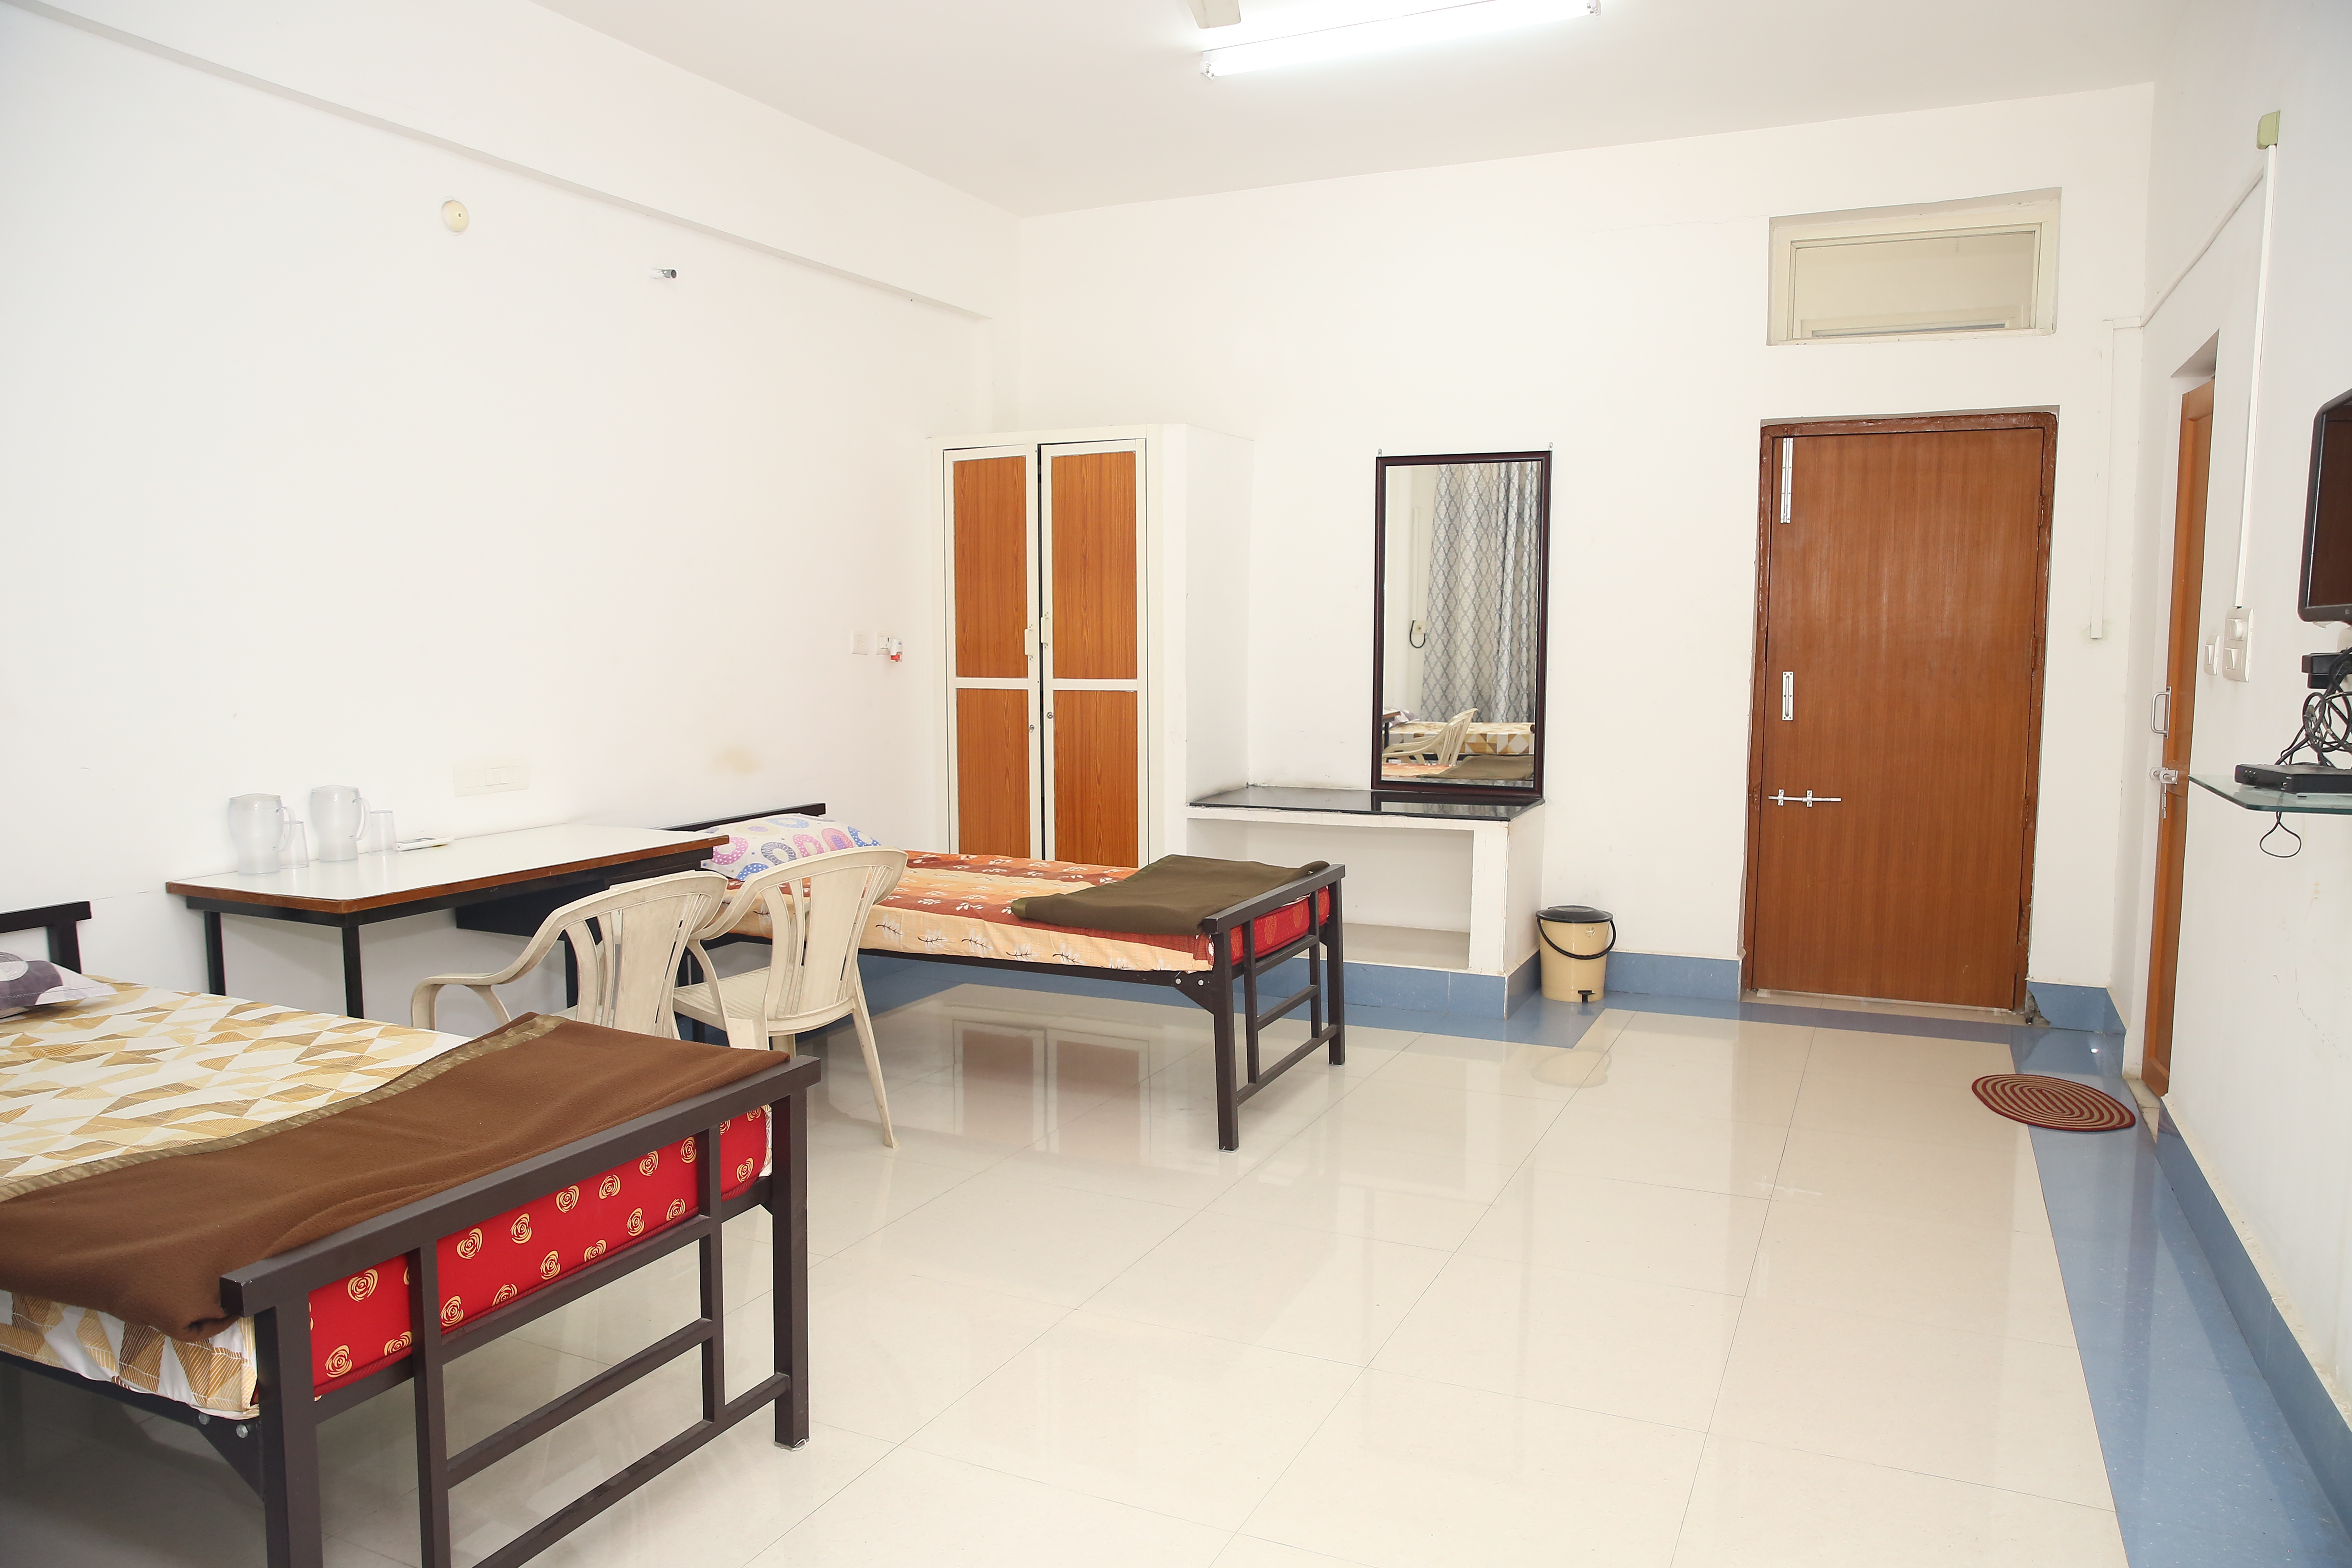 Hostel Room2